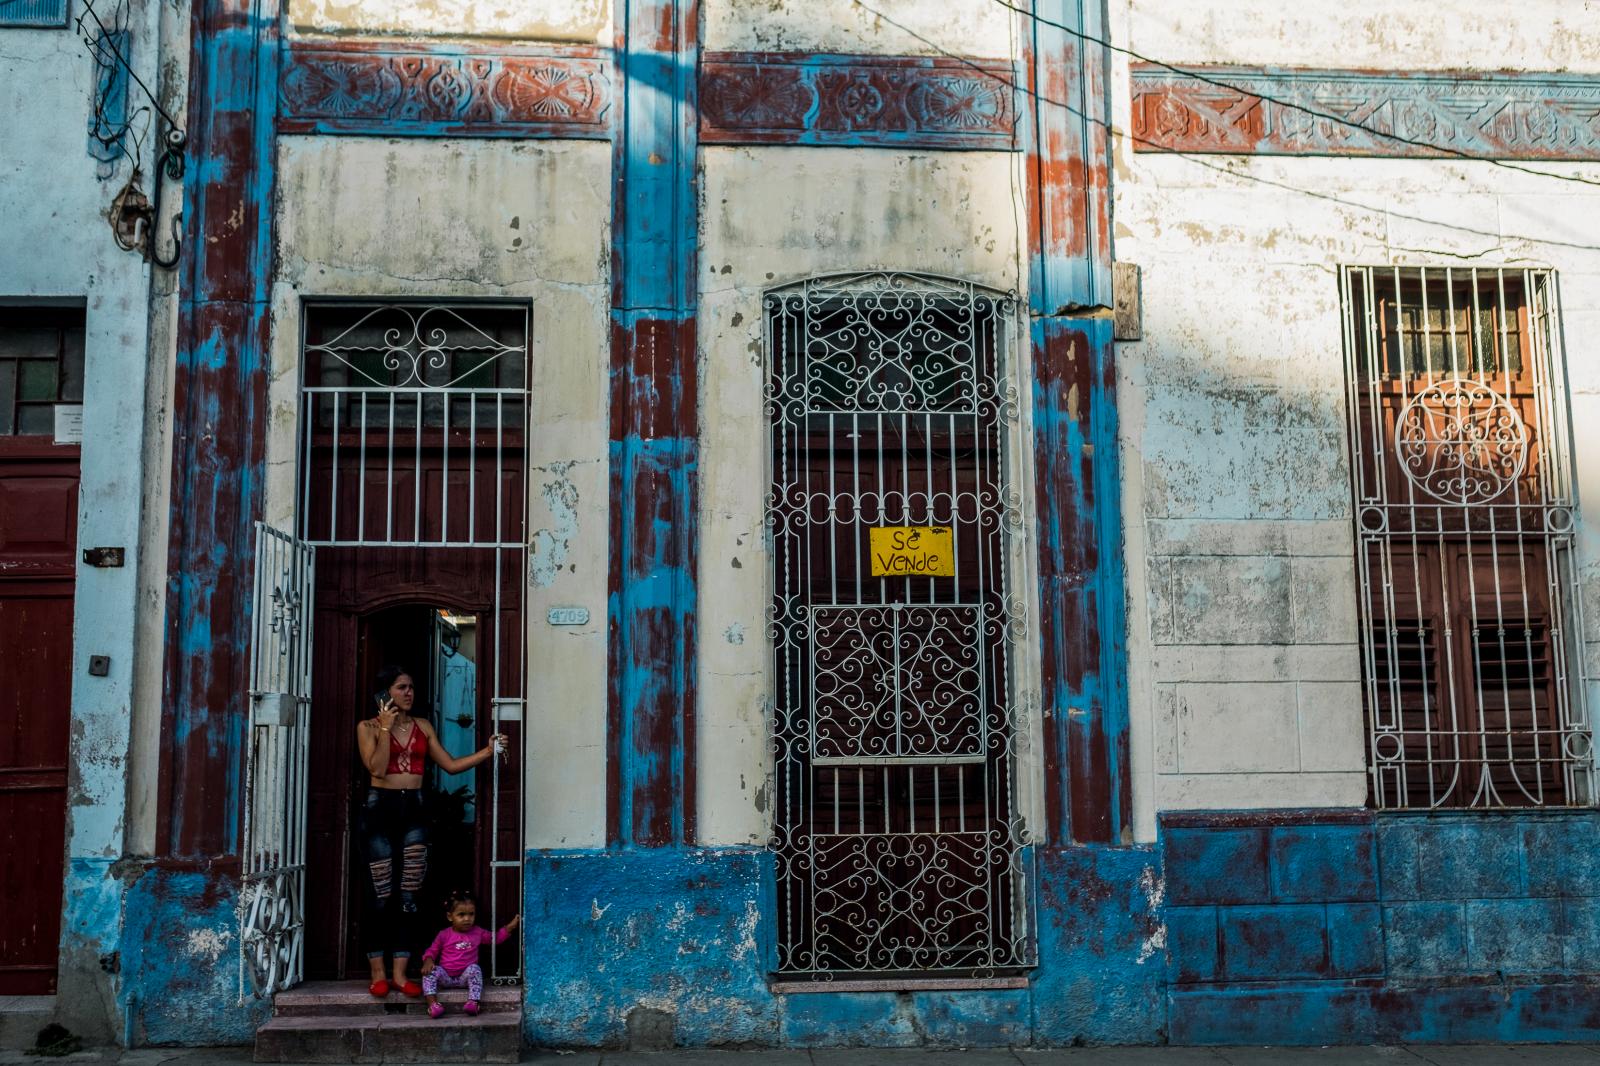 Informal housing market Havana